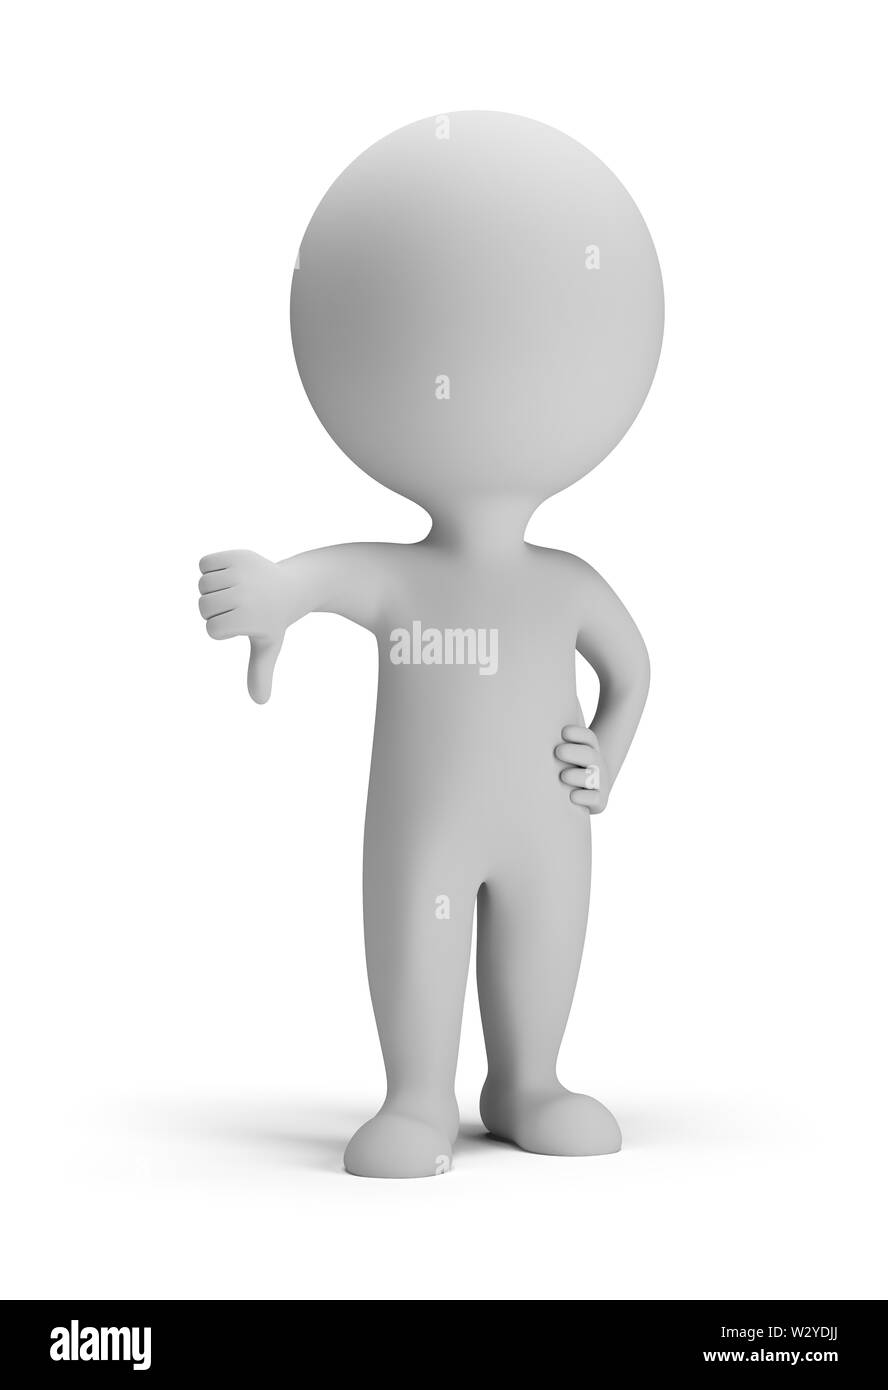 Petite personne 3d - pouce pointant vers le bas. Image 3d. Isolé sur fond blanc. Banque D'Images